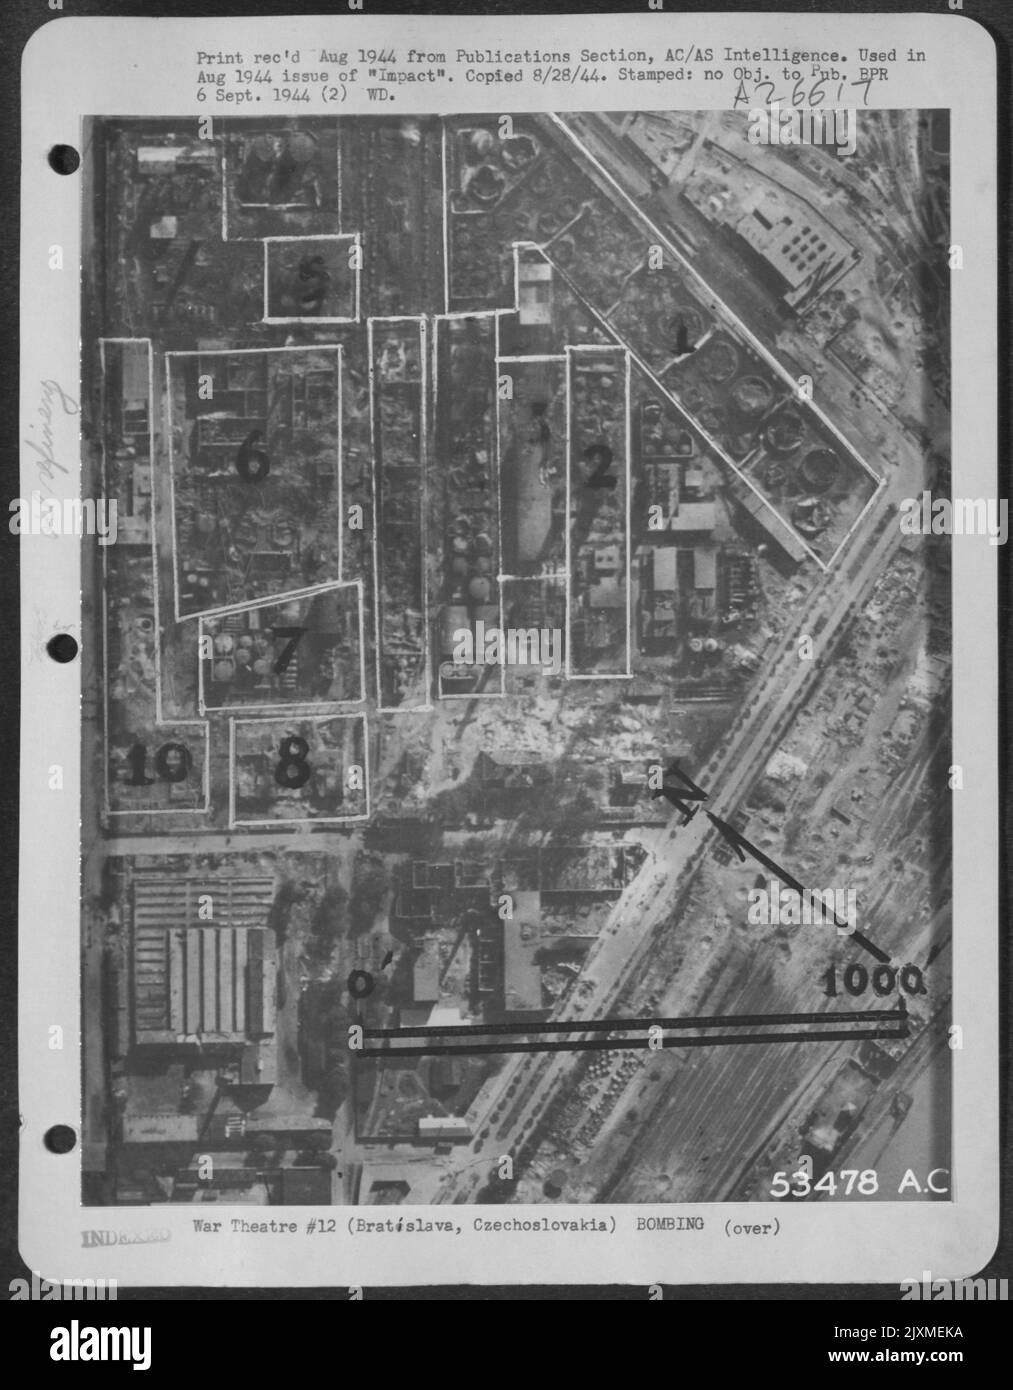 Raffineria Cecoslovacchia-Bratislava dopo il 16 giugno 1944 attacco di 15 AF. I risultati includono 17 serbatoi di carburante distrutti (1), unità di distillazione (2), caldaia (3), serbatoi riceventi (4), unità di trattamento (5), unità di rettifica (7) e cinque edifici (10) Foto Stock